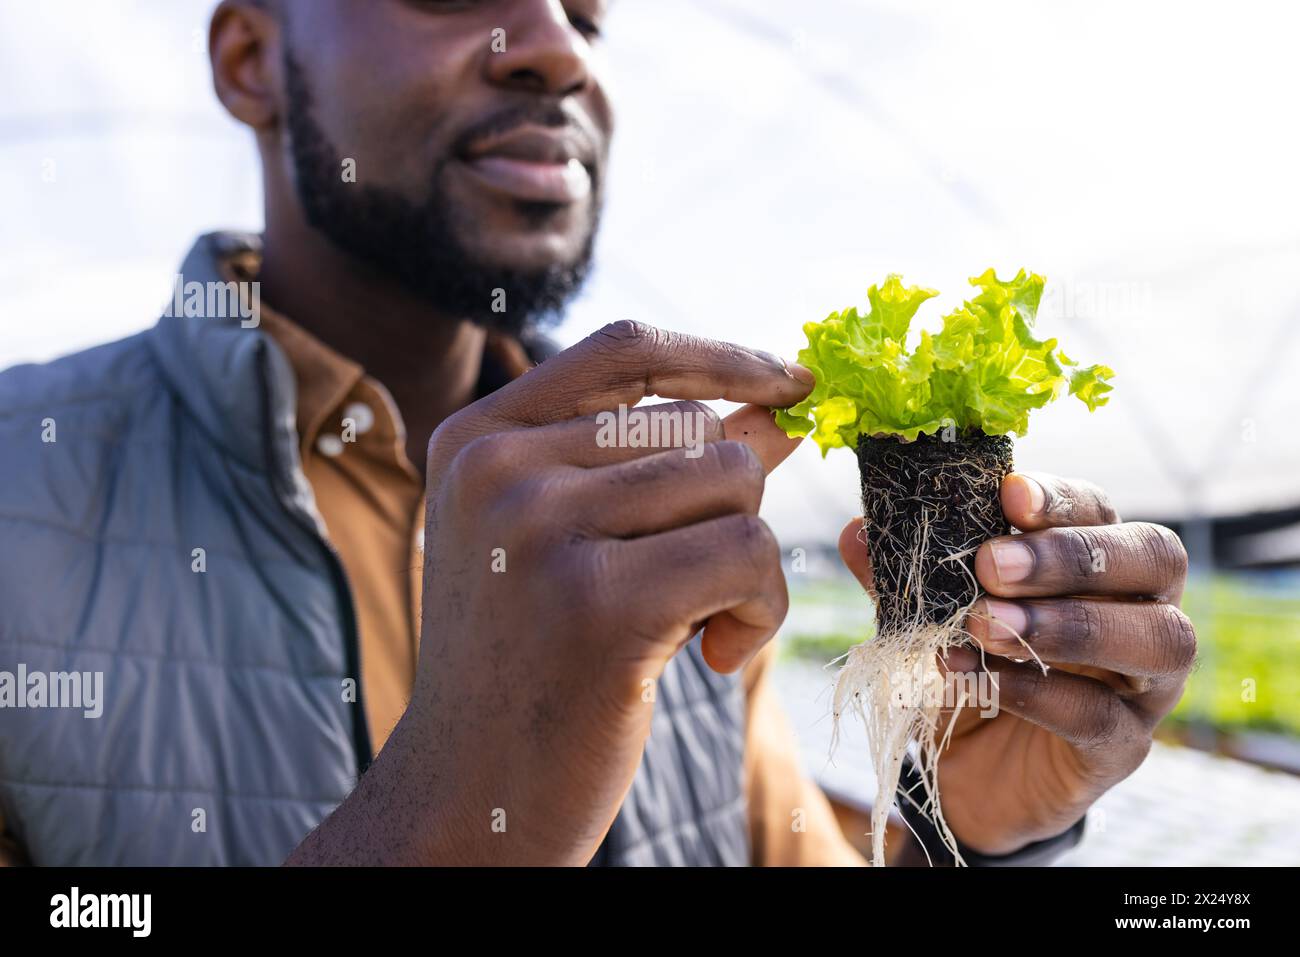 Un jeune homme afro-américain surveillant une ferme examinant des racines de laitue en serre Banque D'Images